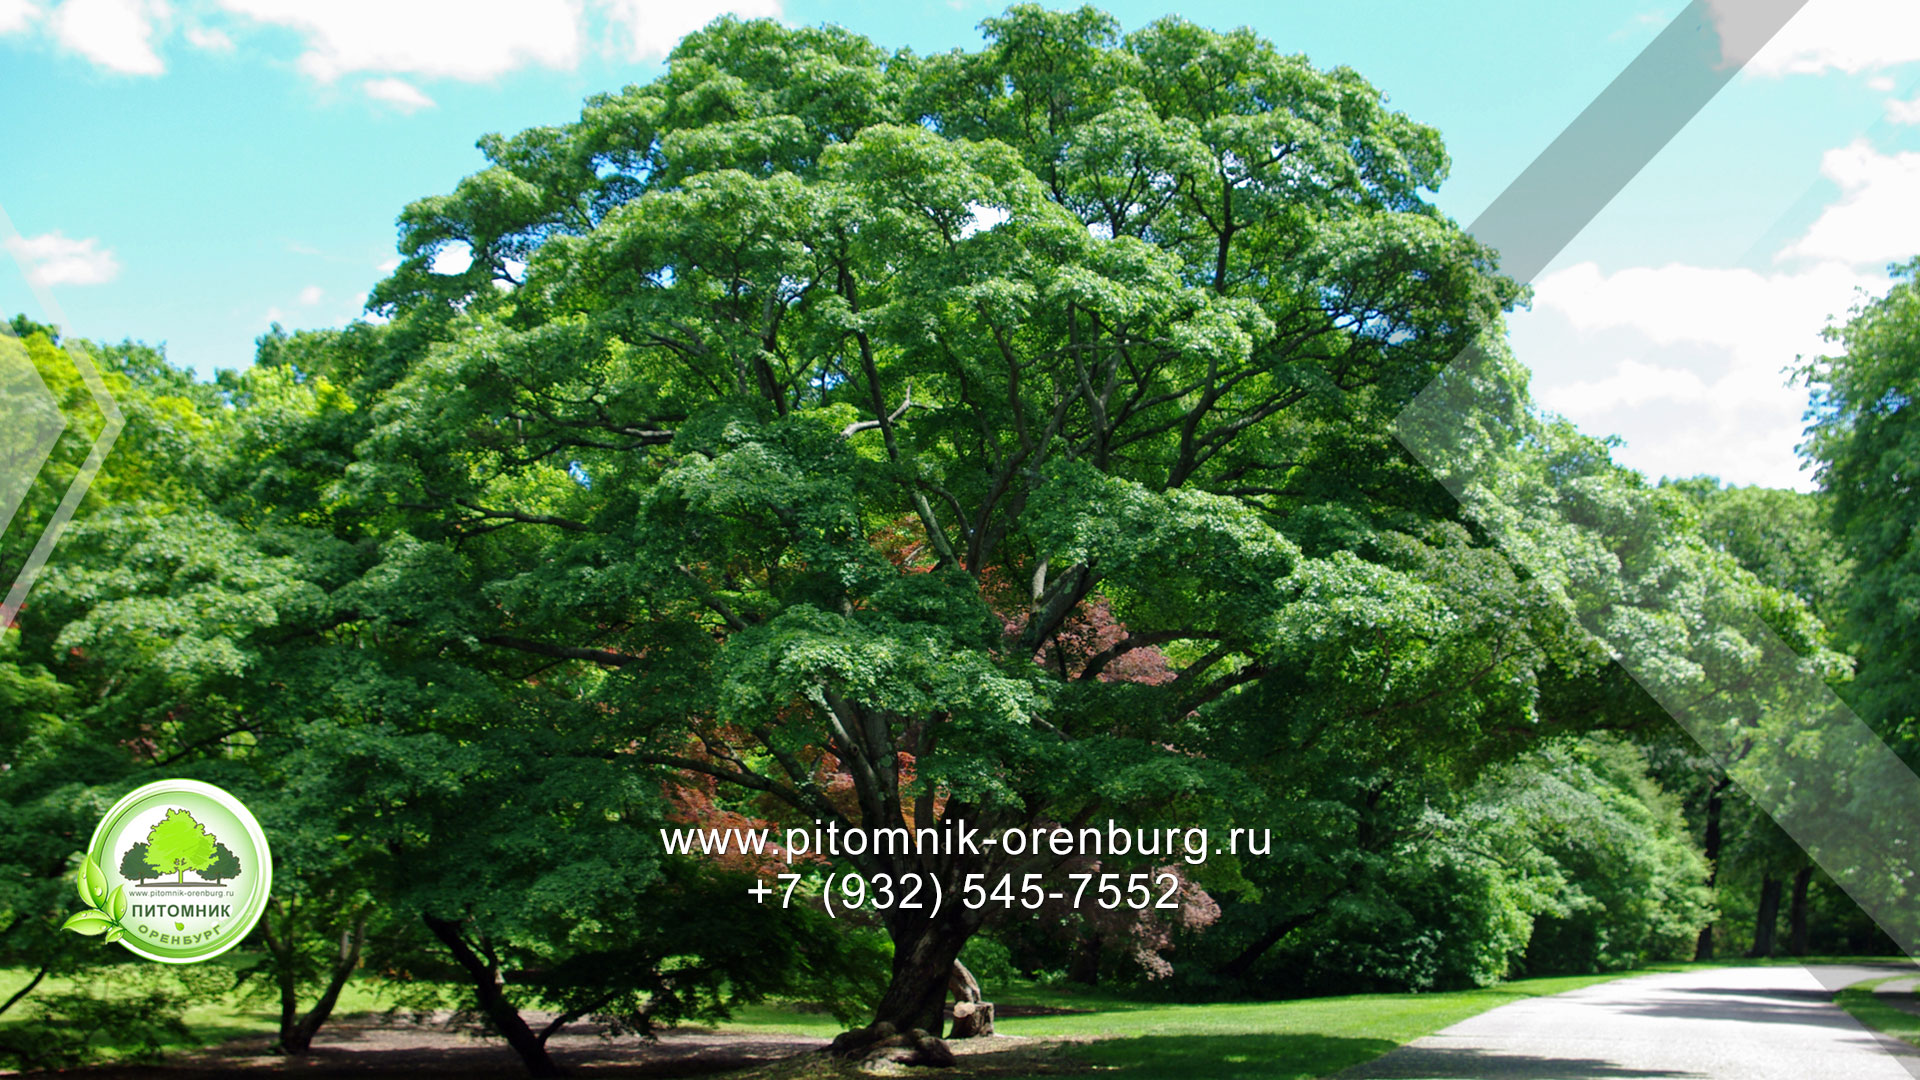 Оренбургский питомник растений лиственные деревья